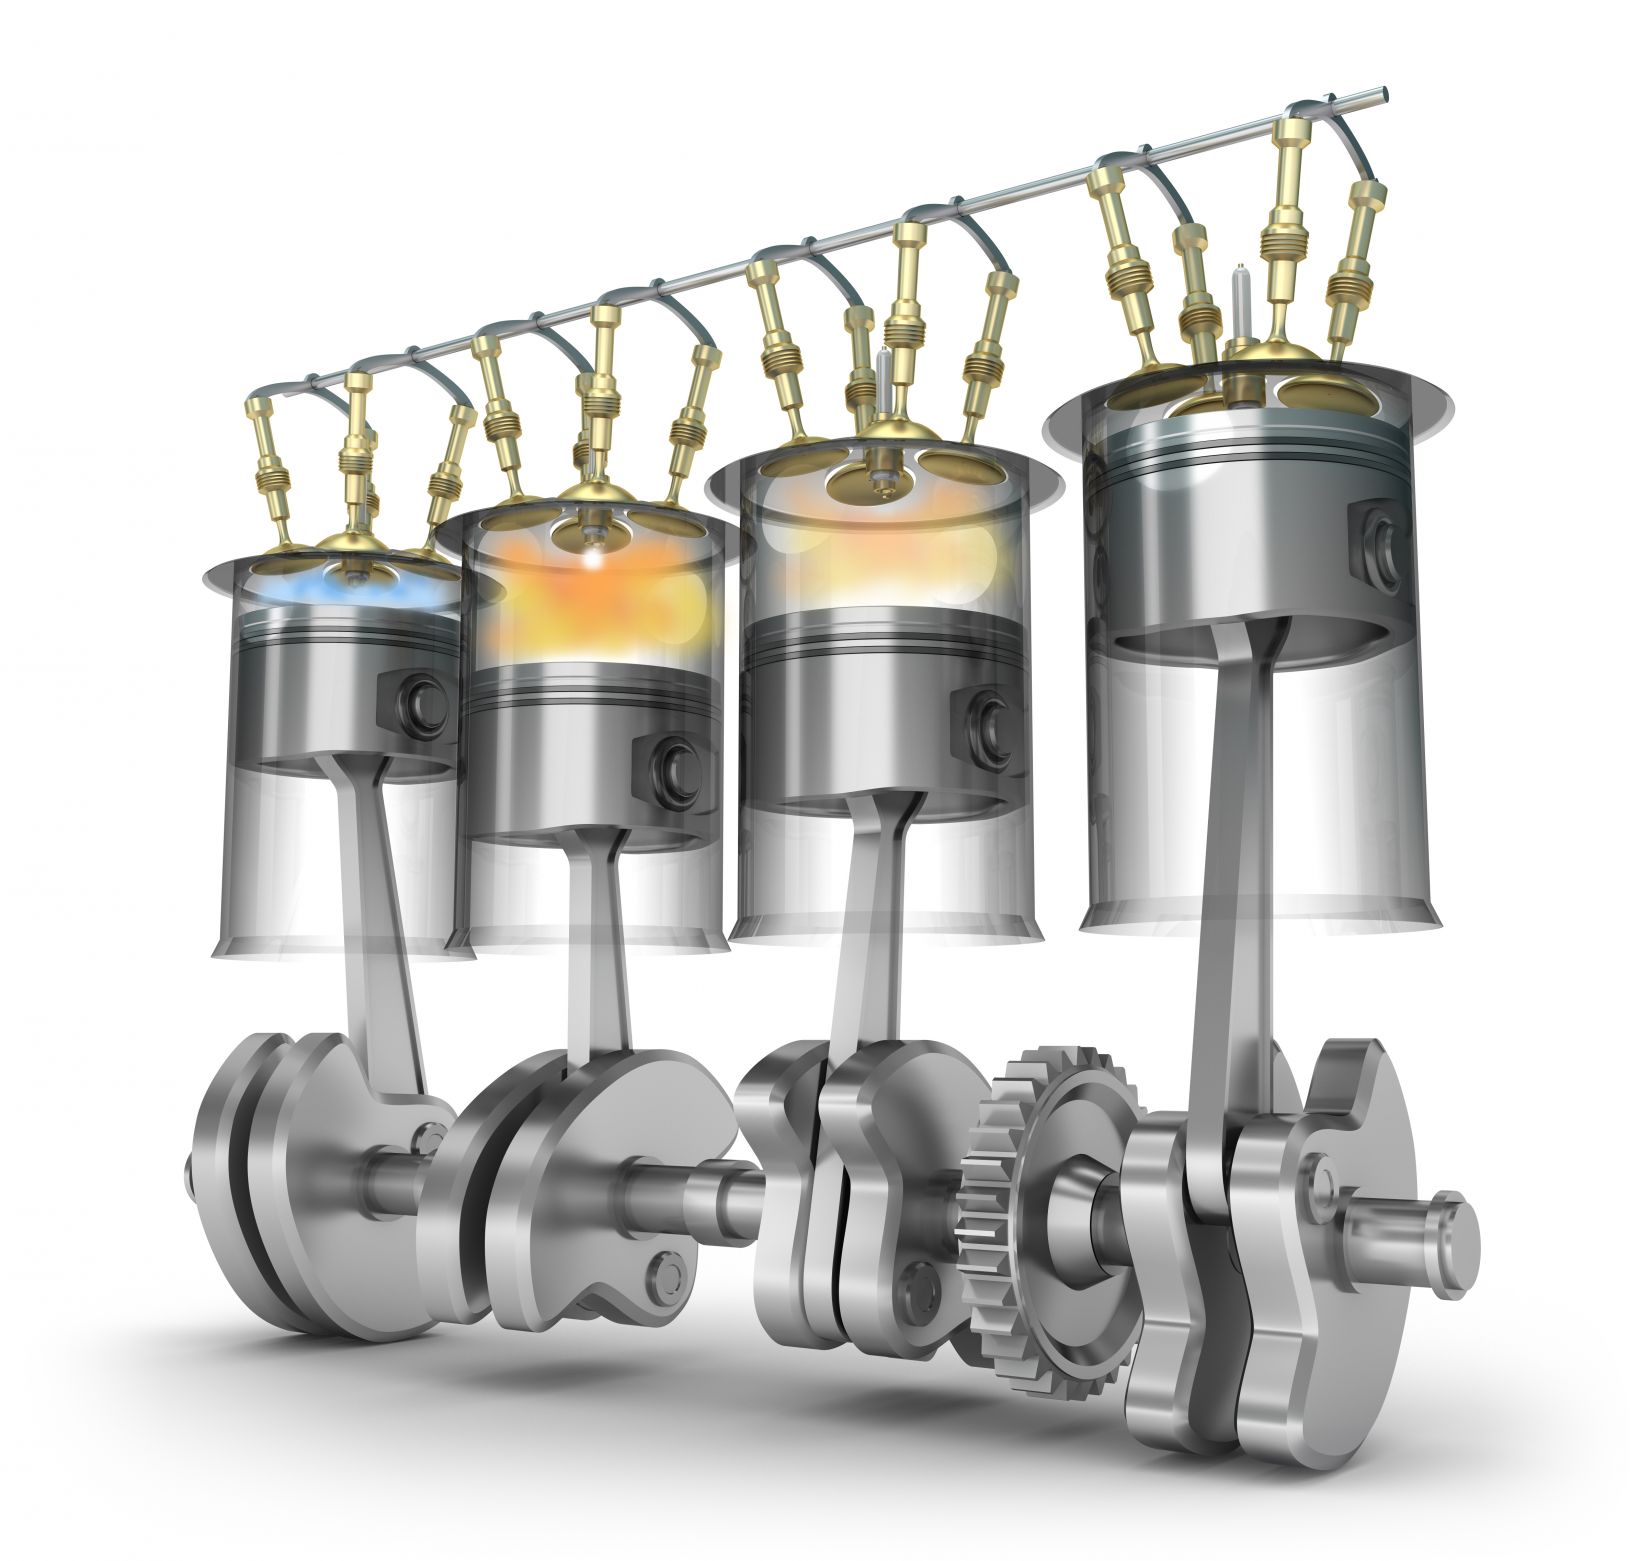 Cylindres de chambre de combustion comme ceux d’un gros moteur alternatif à combustion interne